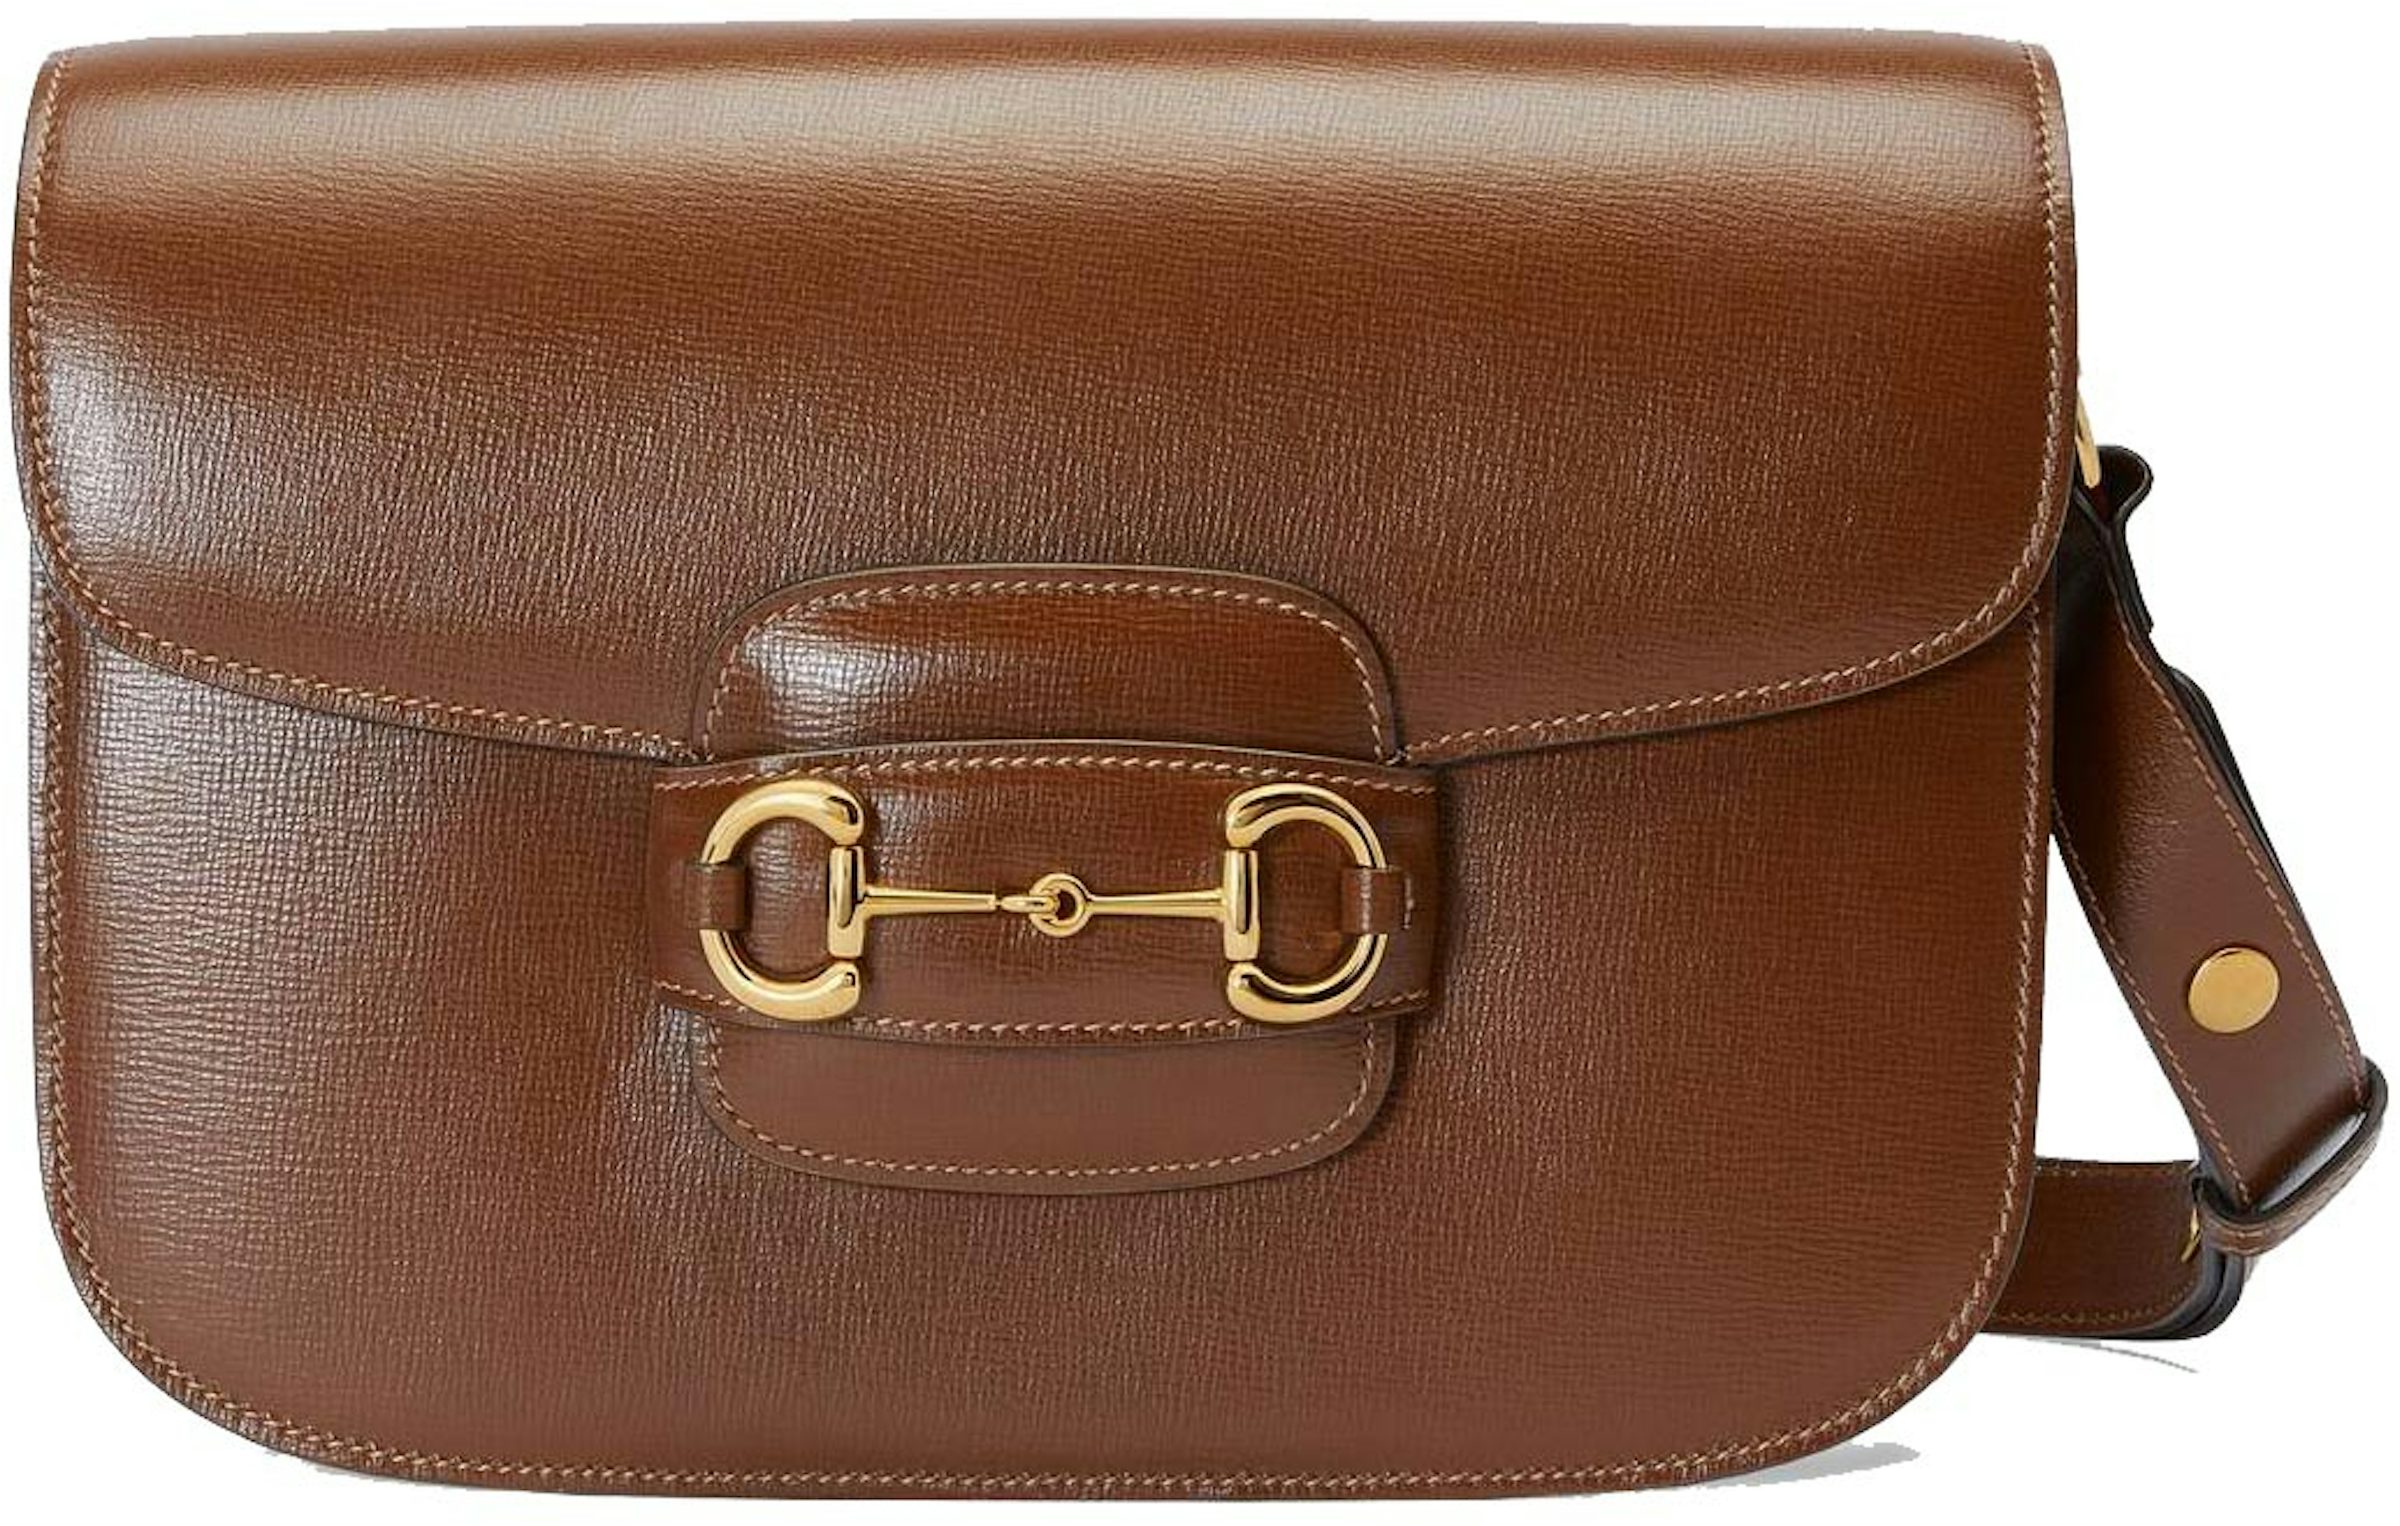 Gucci Horsebit 1955 Mini Shoulder Bag in Brown - Gucci